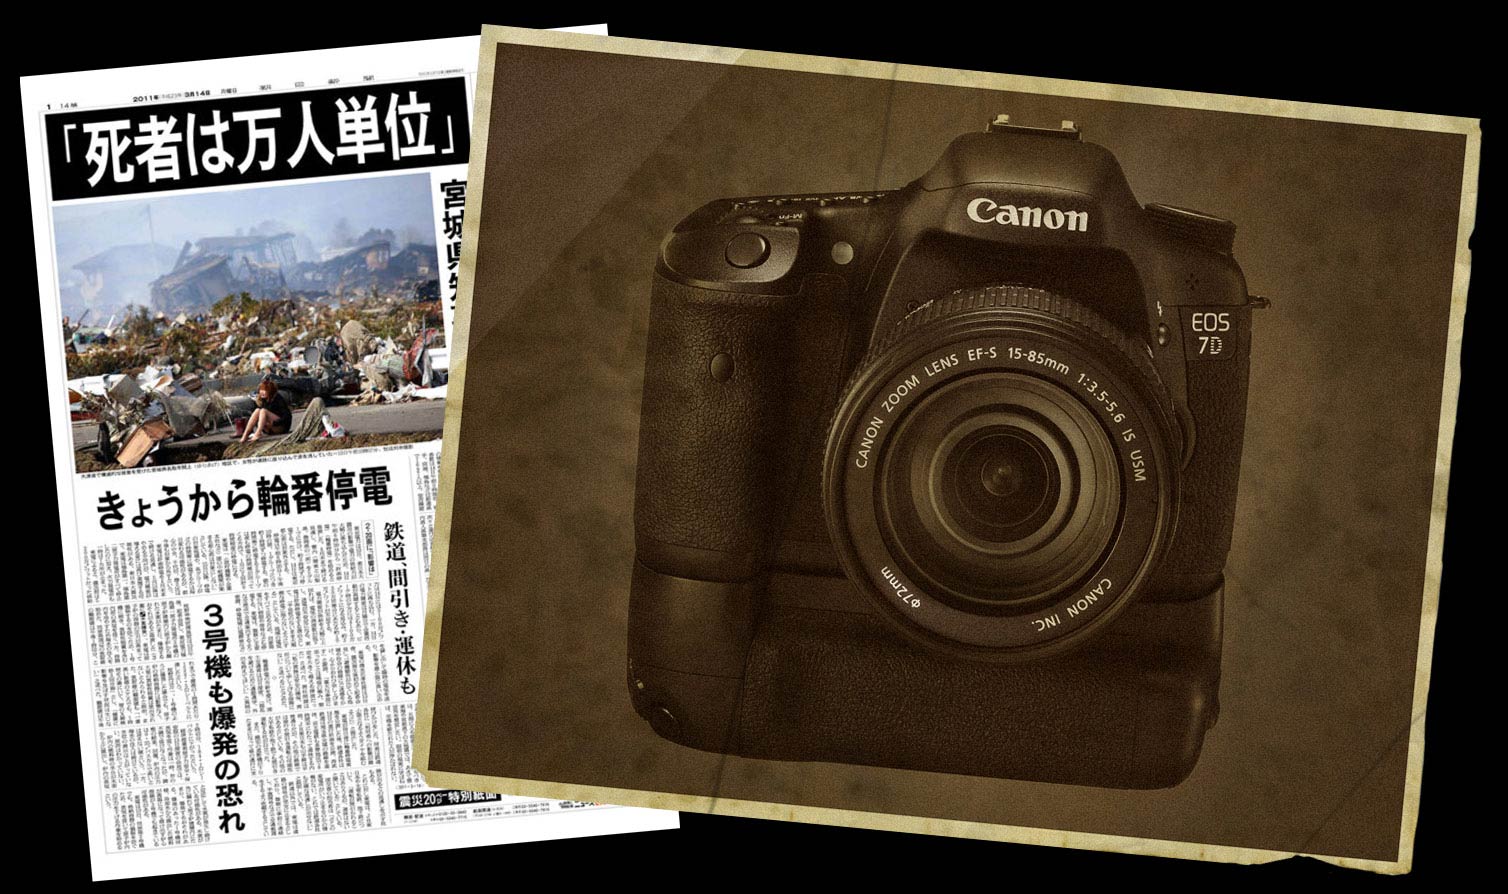 Canon 7d and Japan Earthquake Headline